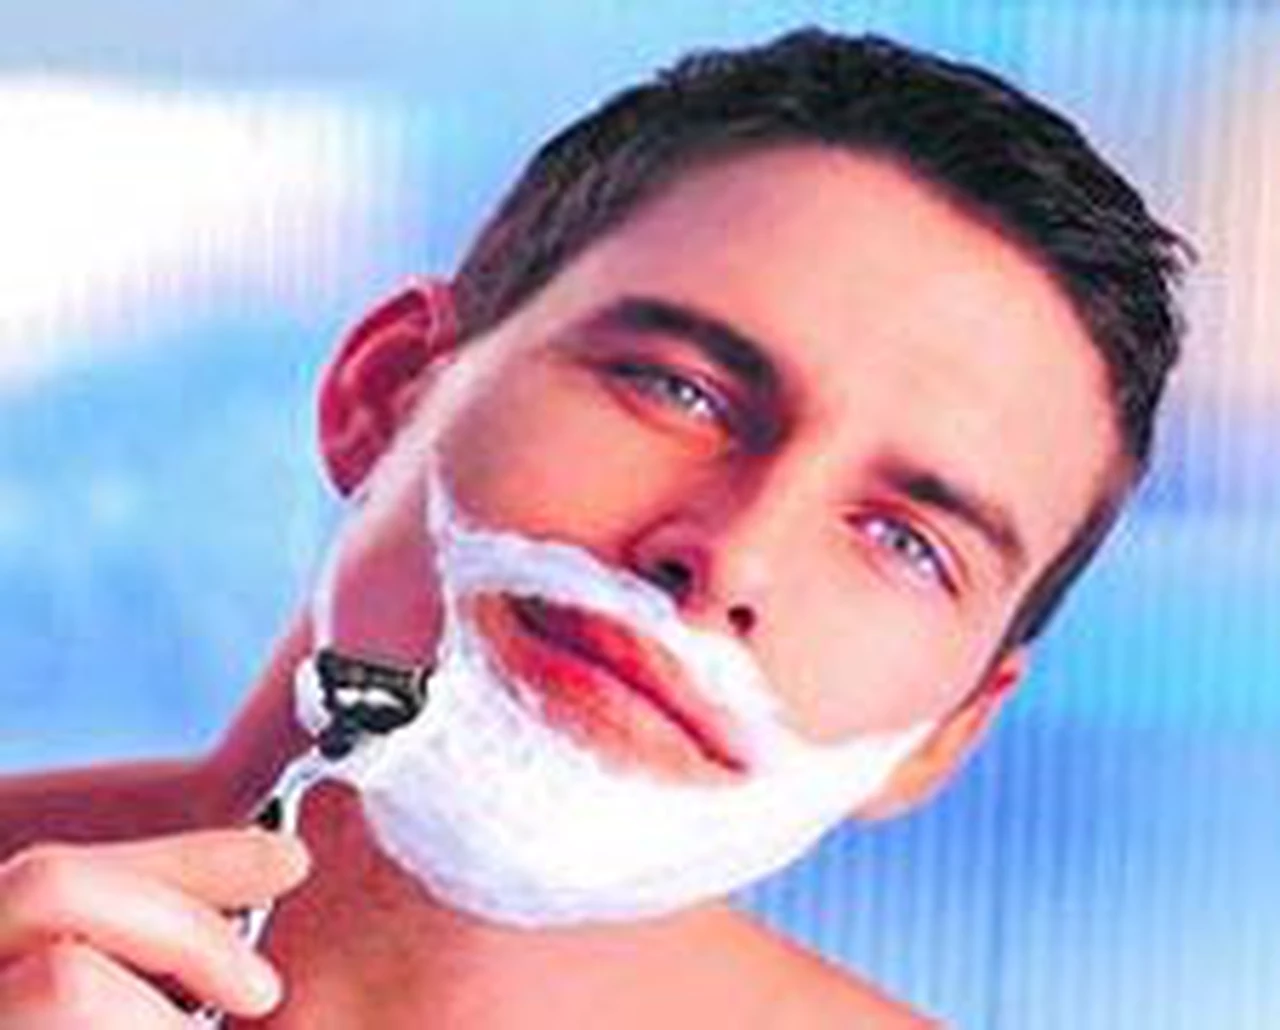 La guerra de la afeitada: Schick sale a romper el monopolio de Gillette